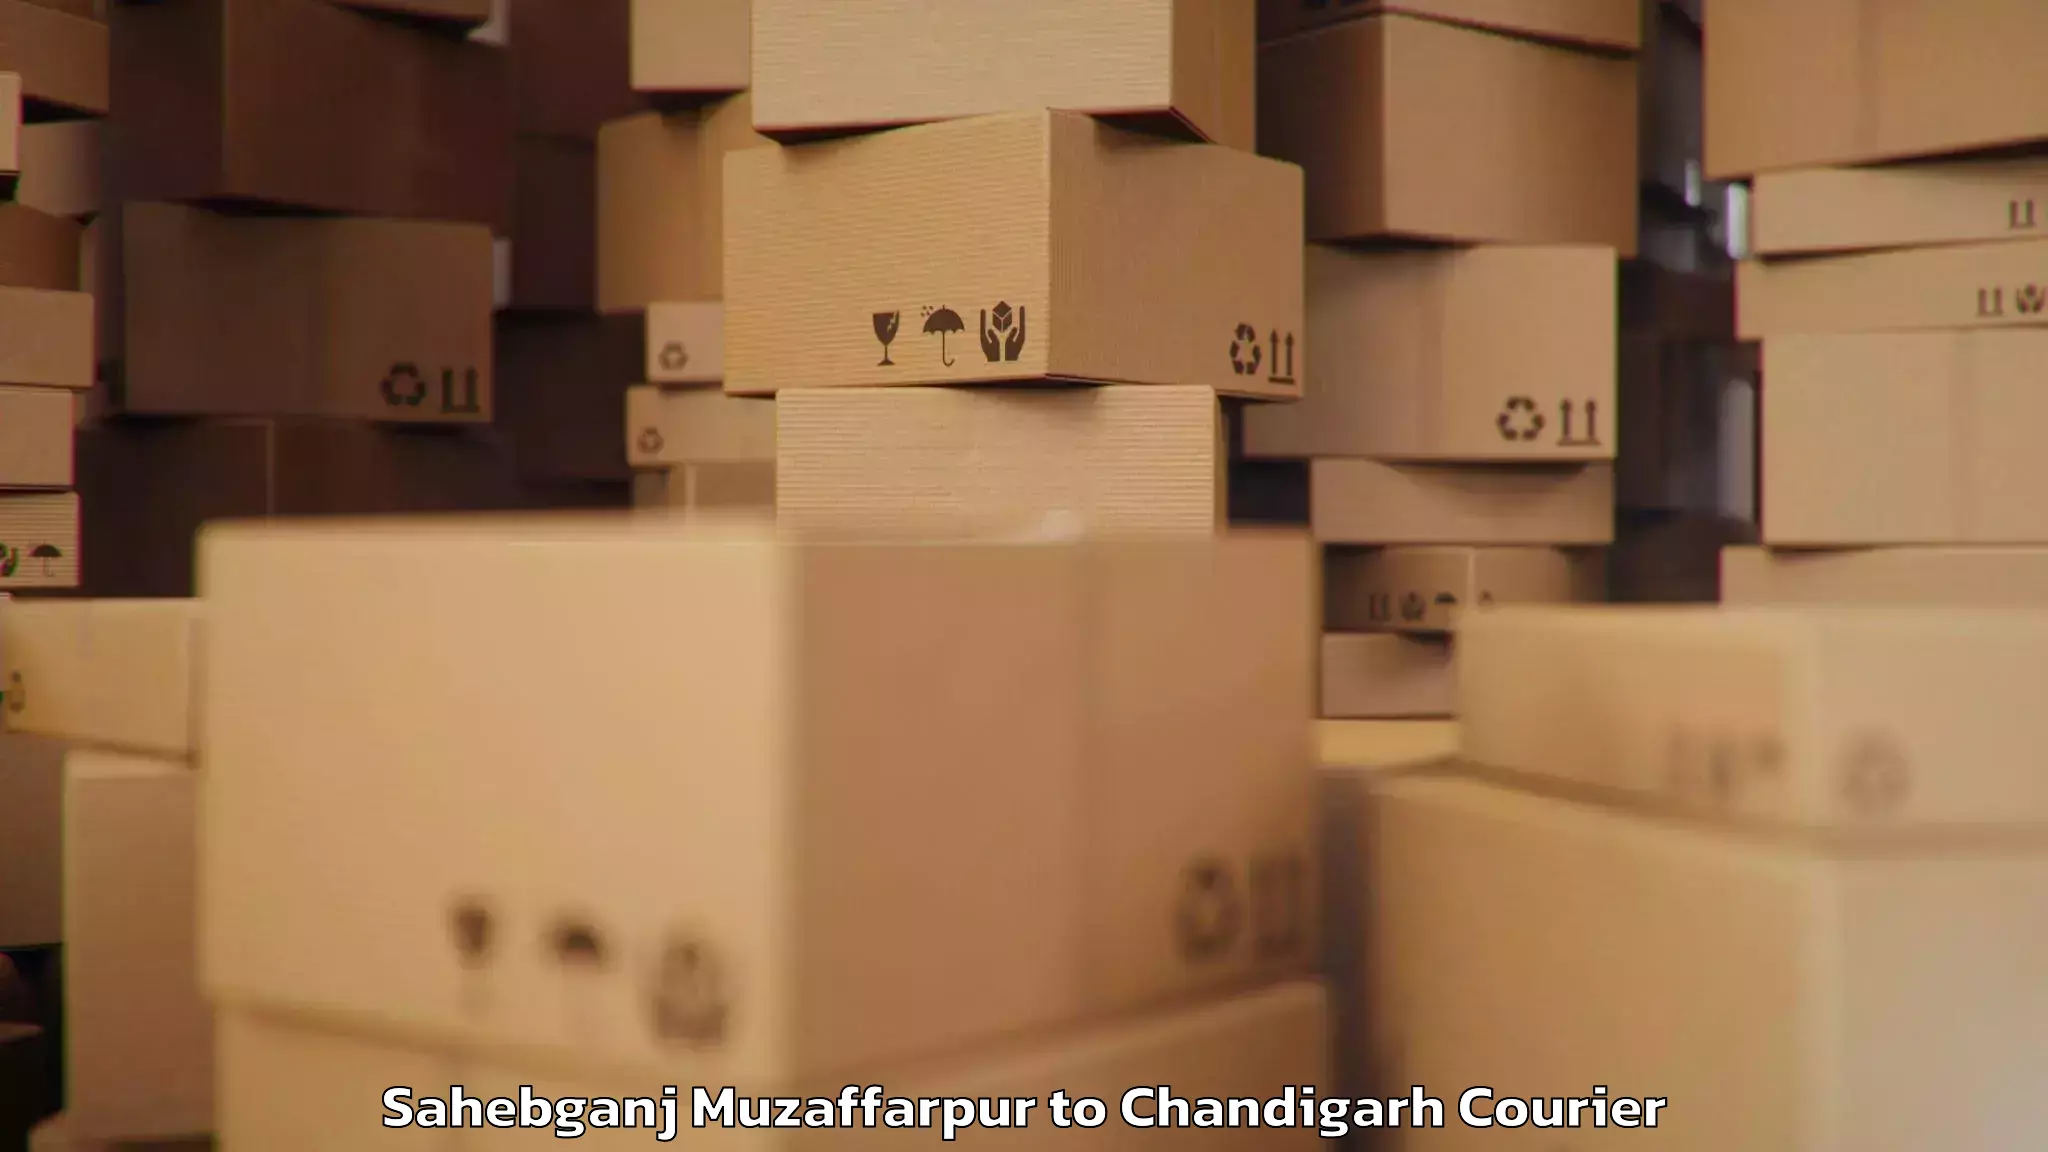 Baggage transport management Sahebganj Muzaffarpur to Kharar